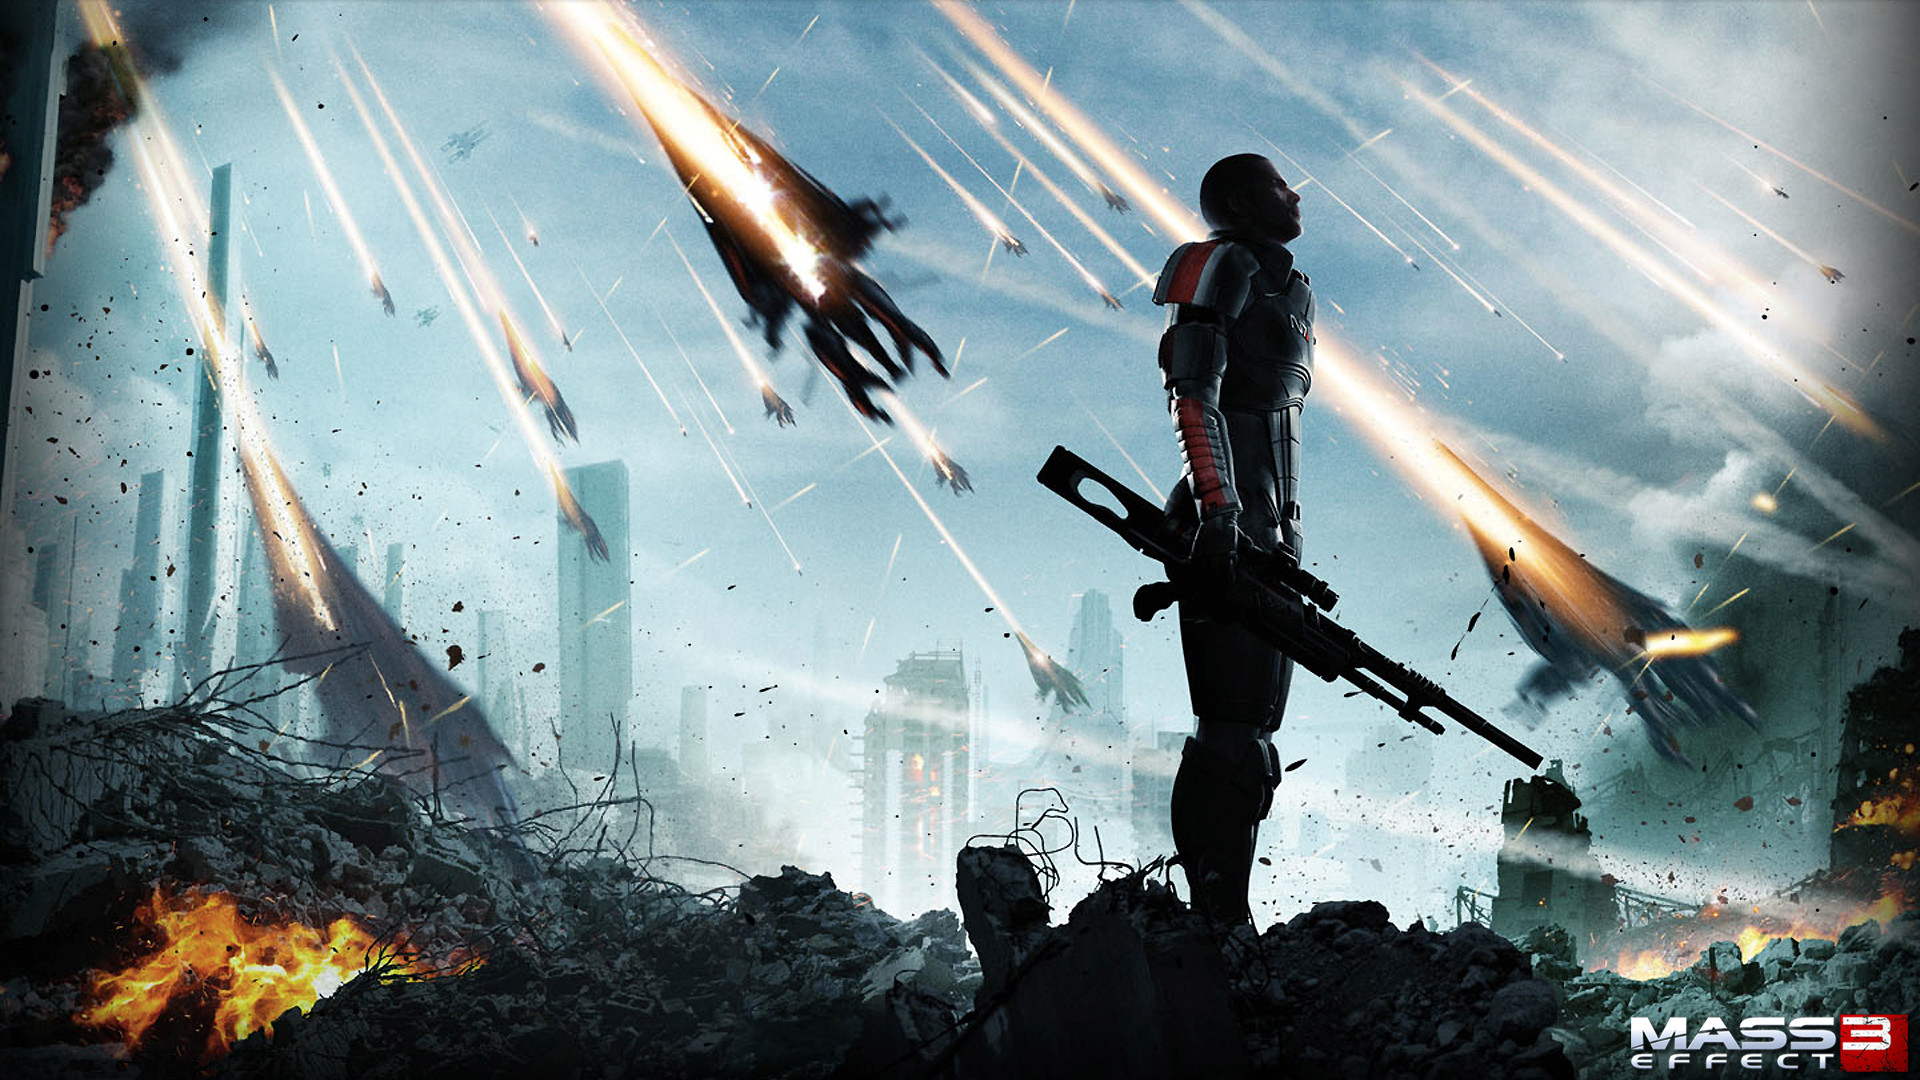 1920x1080 Mass Effect 3 HD Wallpaper | Hintergrund |  | ID:225783 - Wallpaper  Abyss